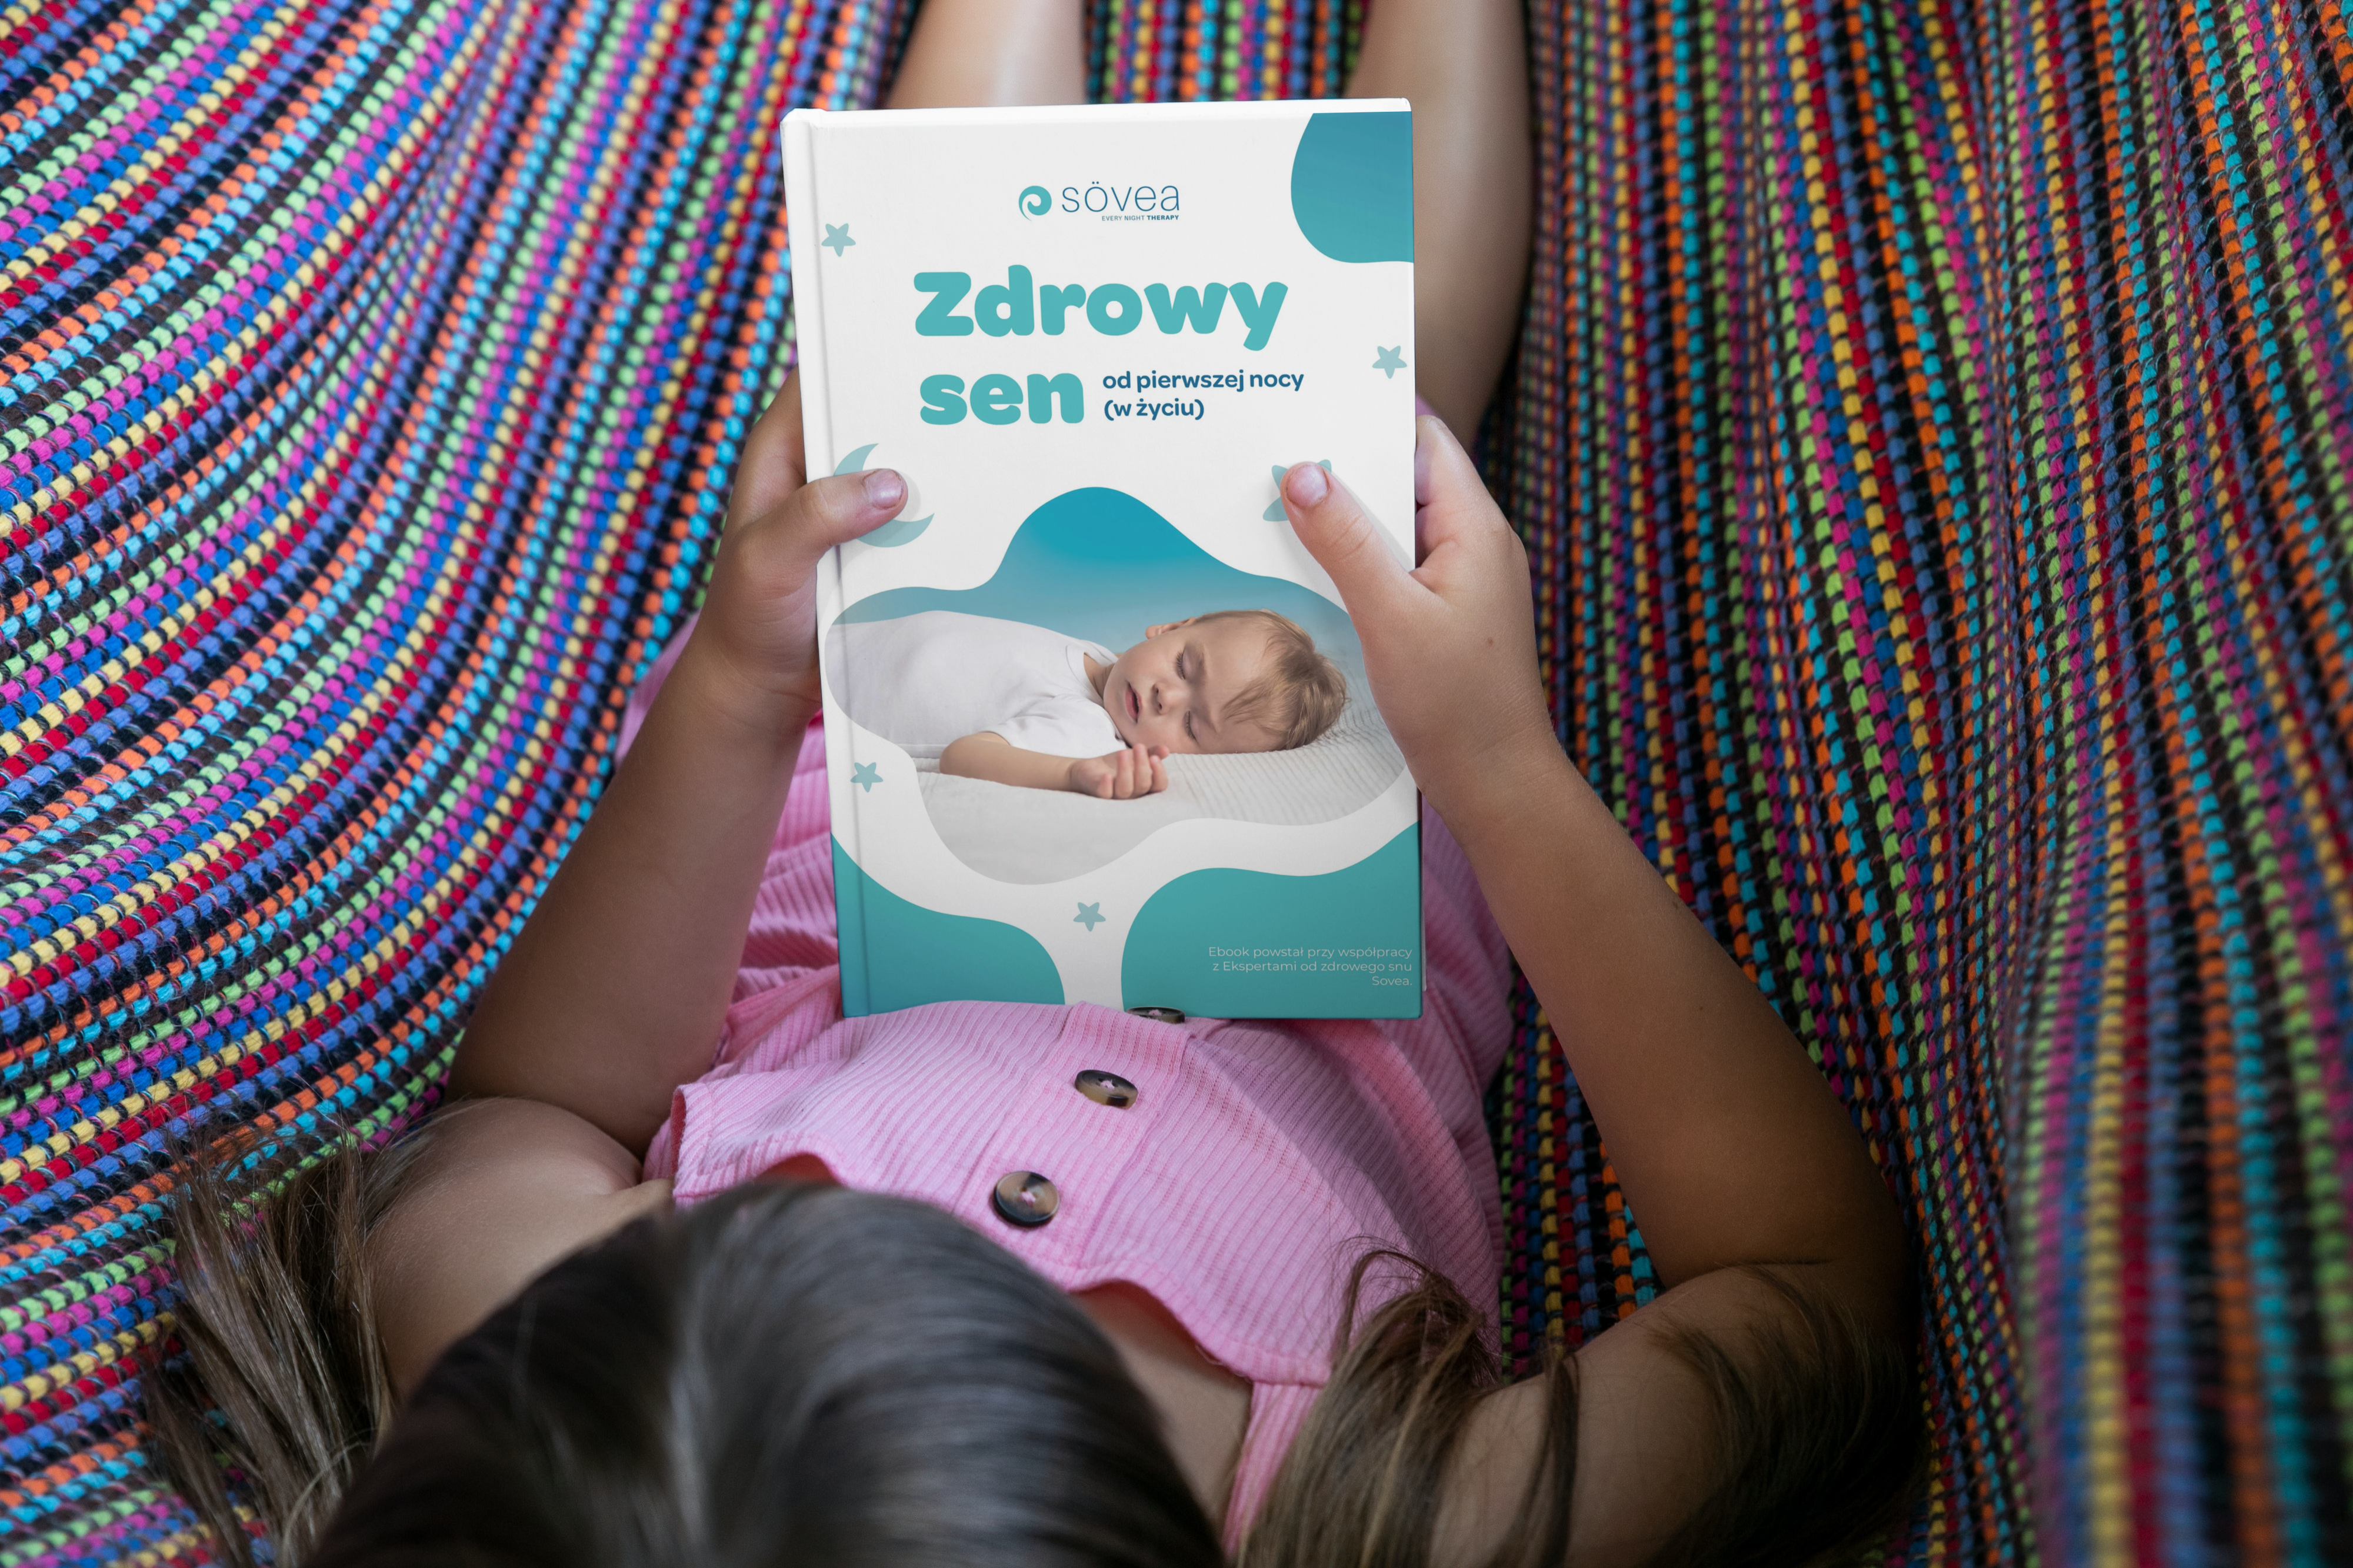 Portrait hardcover book 5,5×8,5 in the hands of a little girl outside_okładka_sovea_icebreaker_zdrowy_sen_od_pierwszej_nocy